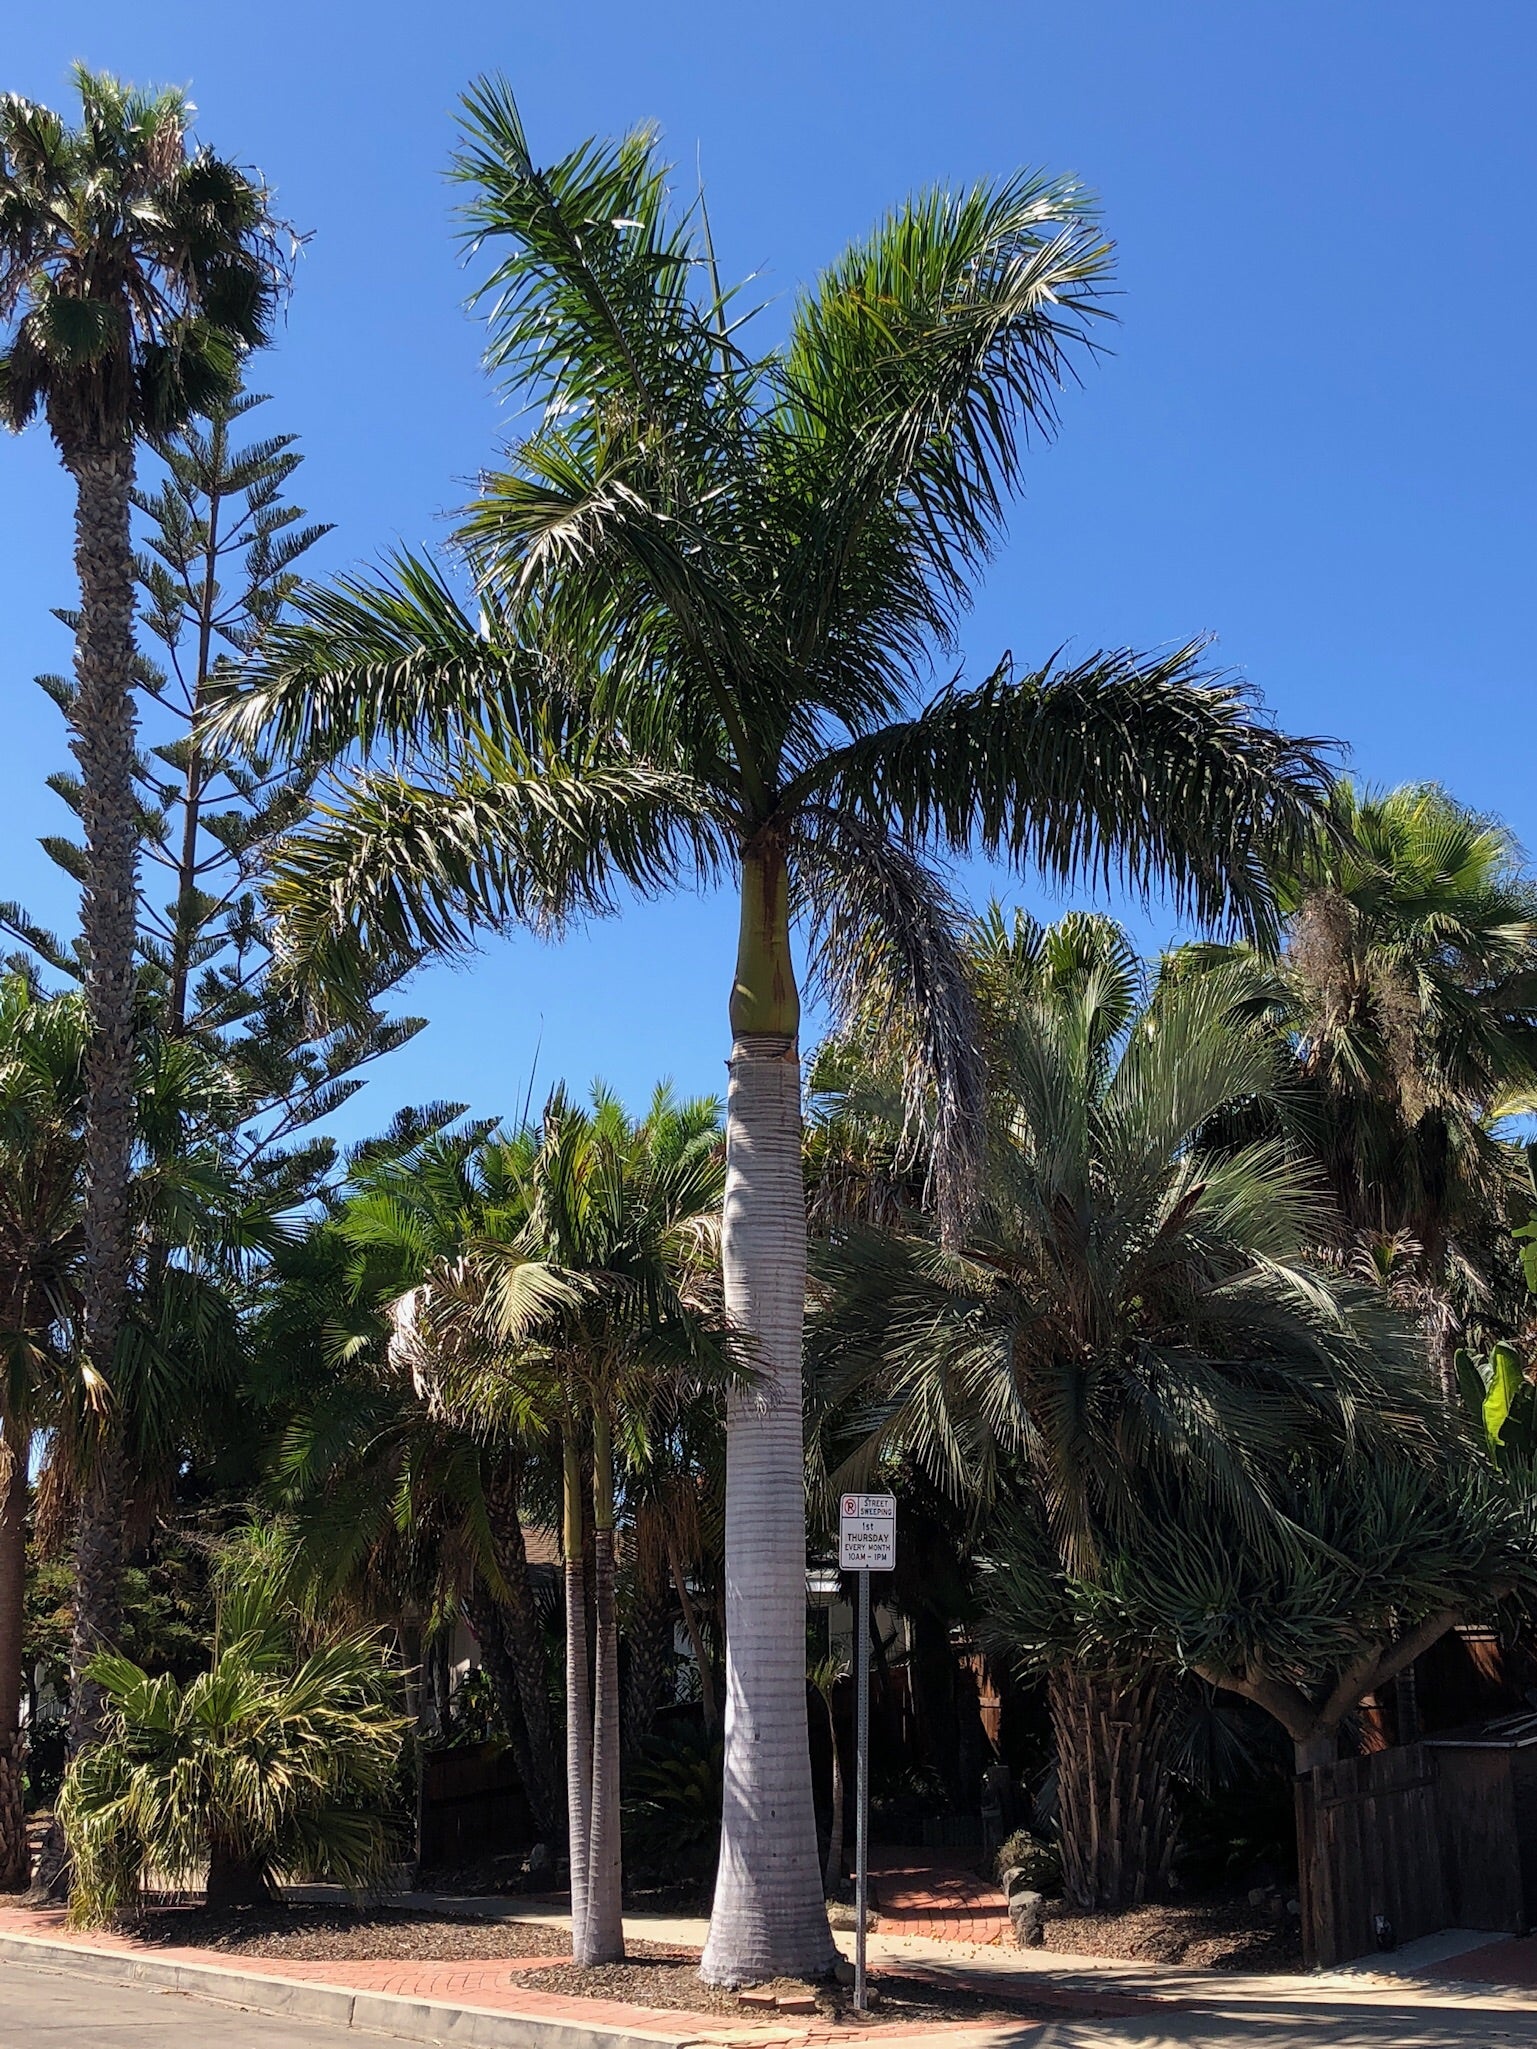 Royal Palm, Roystonea Regia